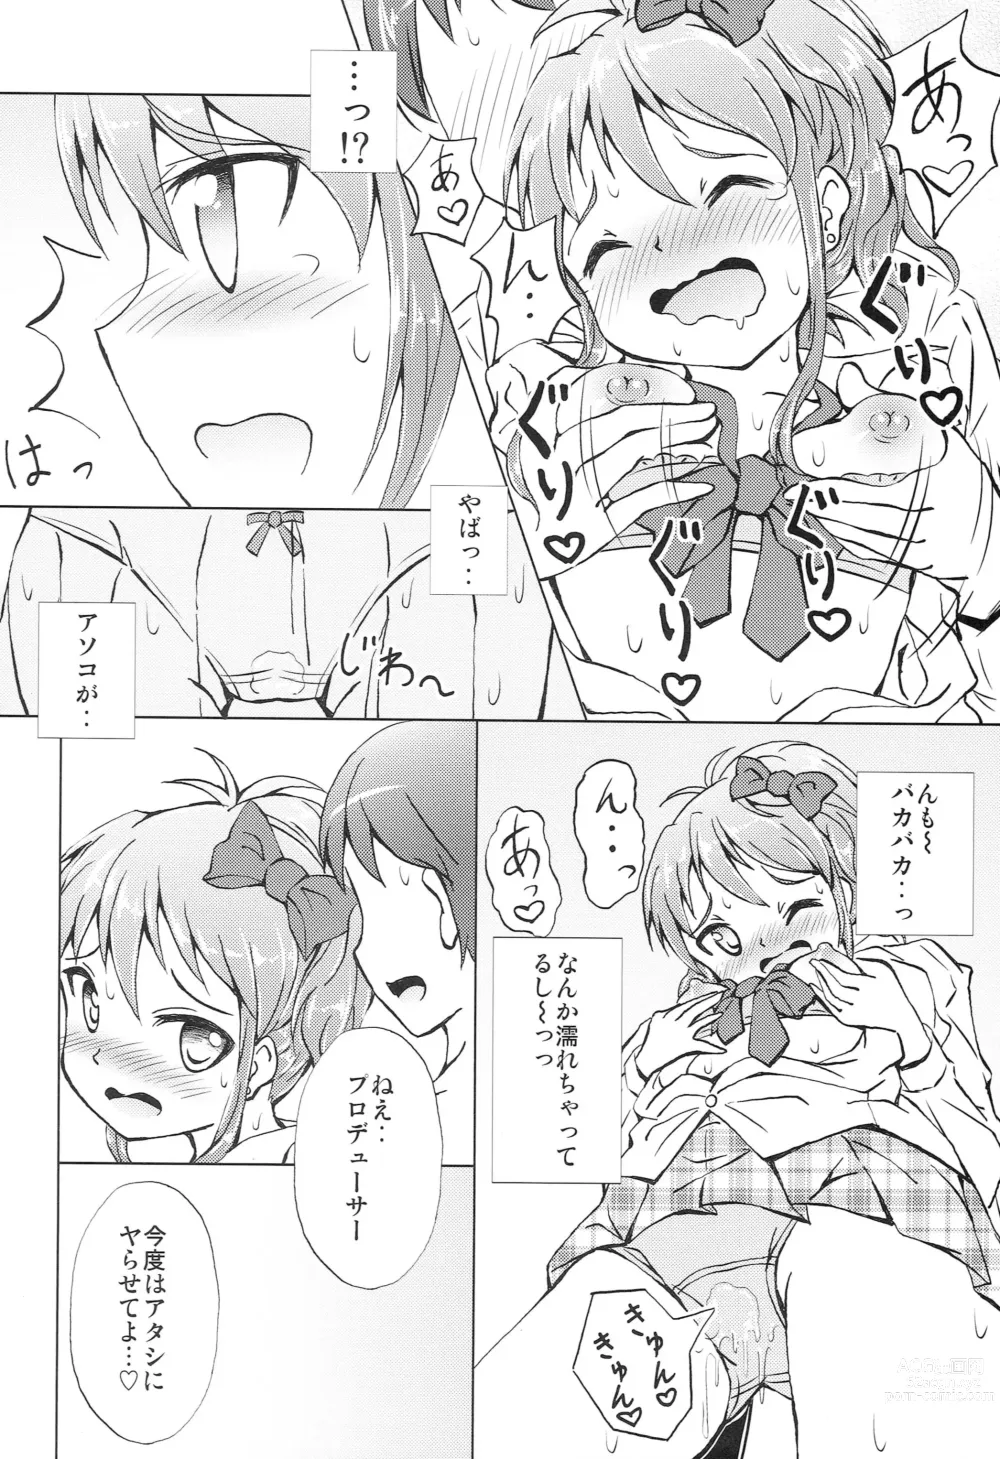 Page 9 of doujinshi Mika-chan Maji Pinky Heart Zenkai